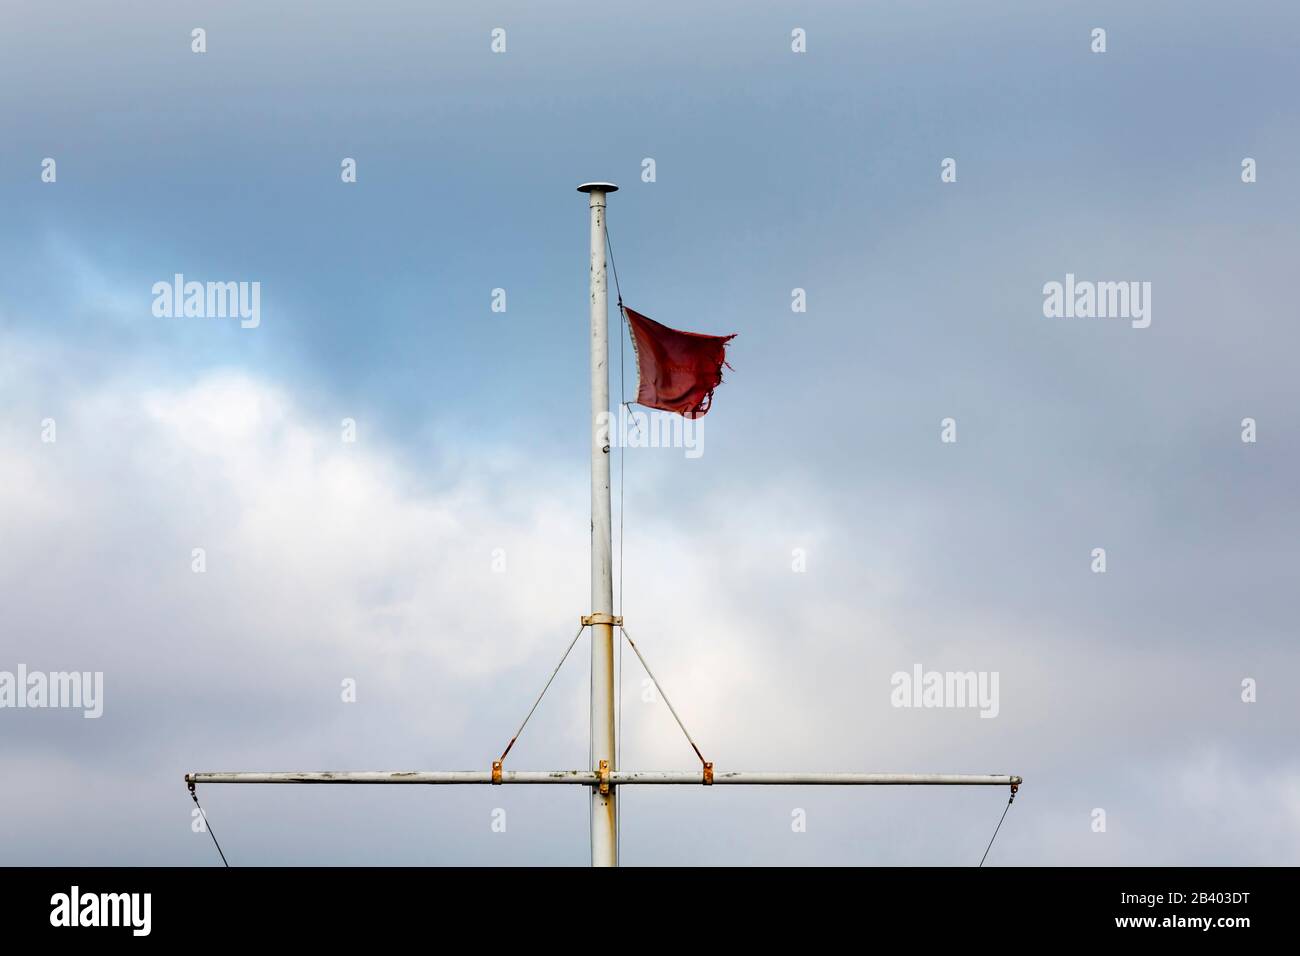 Bandiera rossa nautica in volo Foto Stock